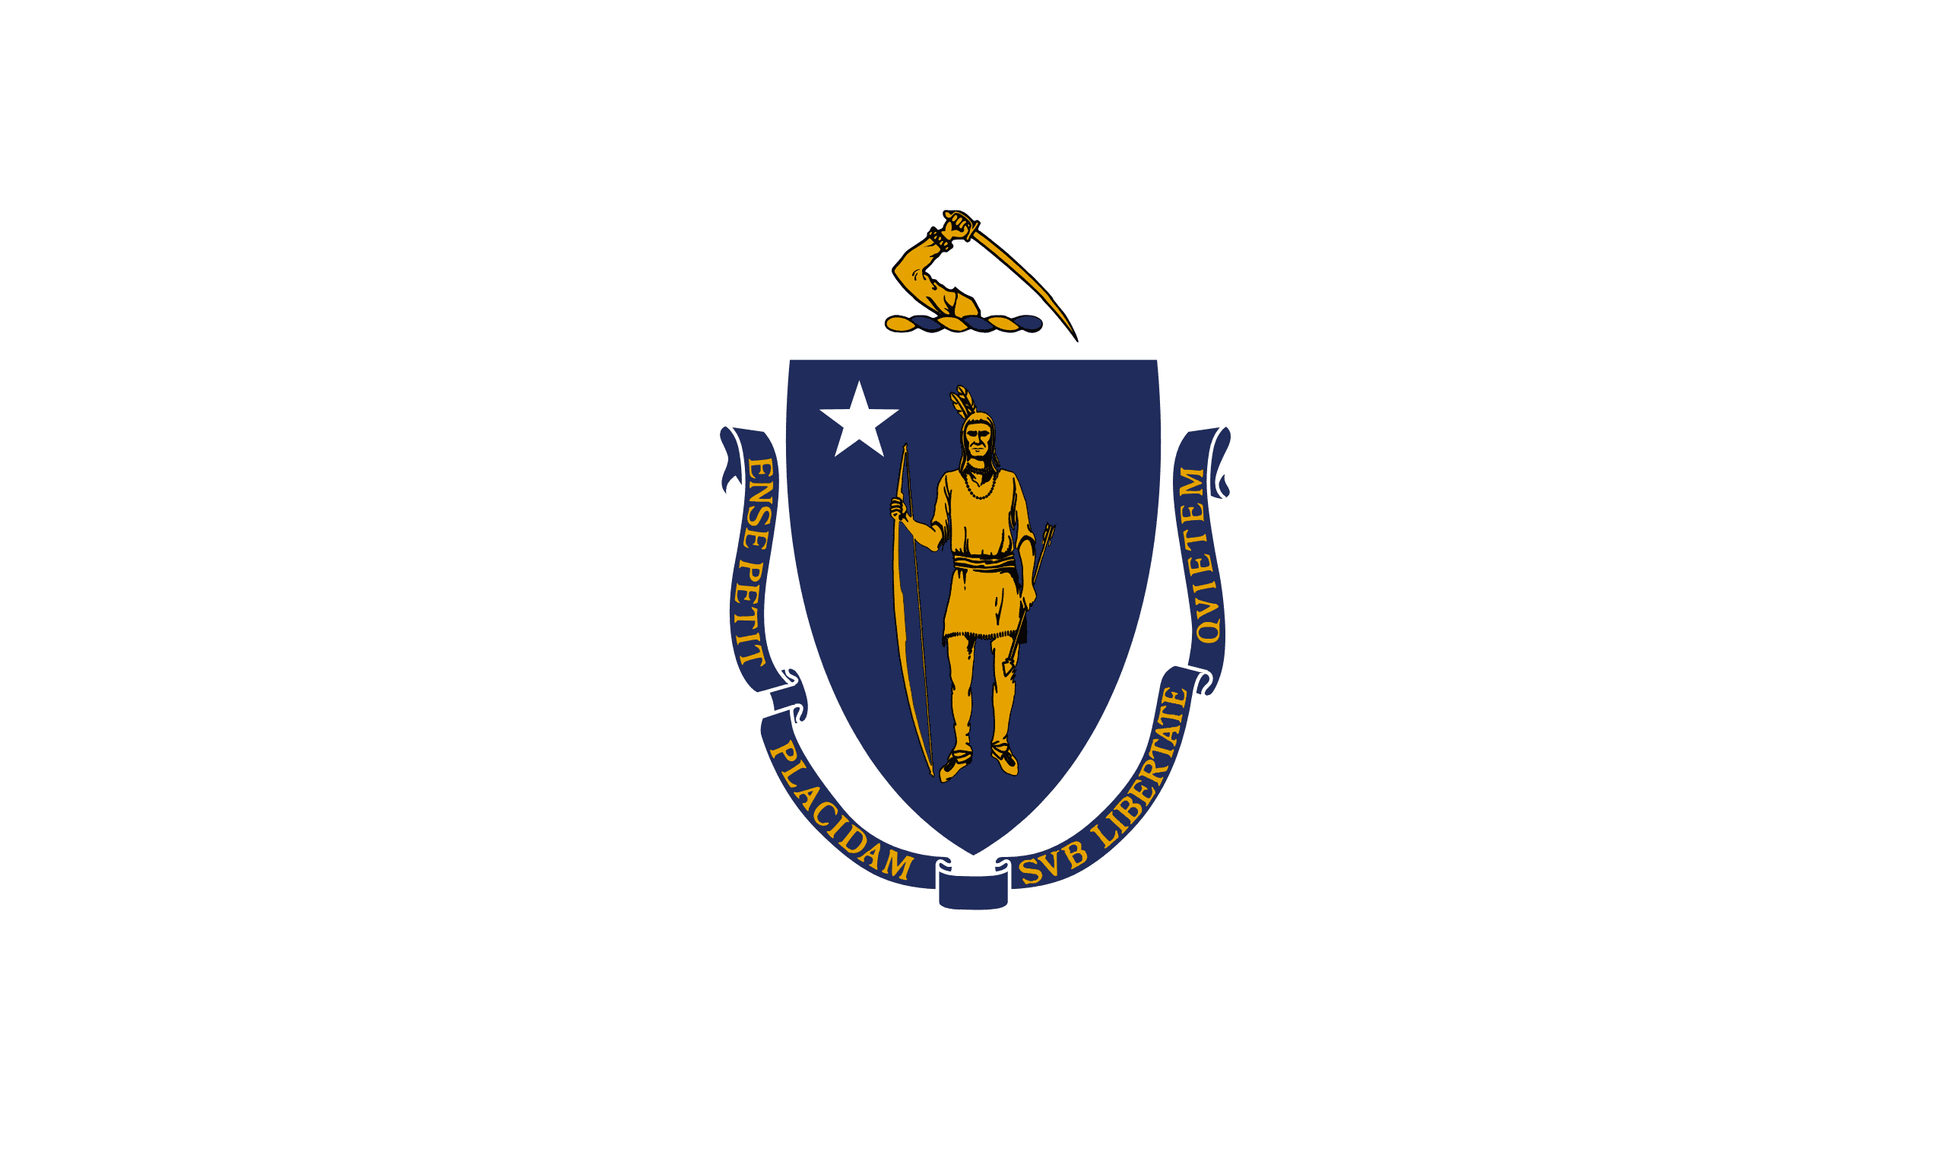 Massachusetts State Flag - Symonds Flags